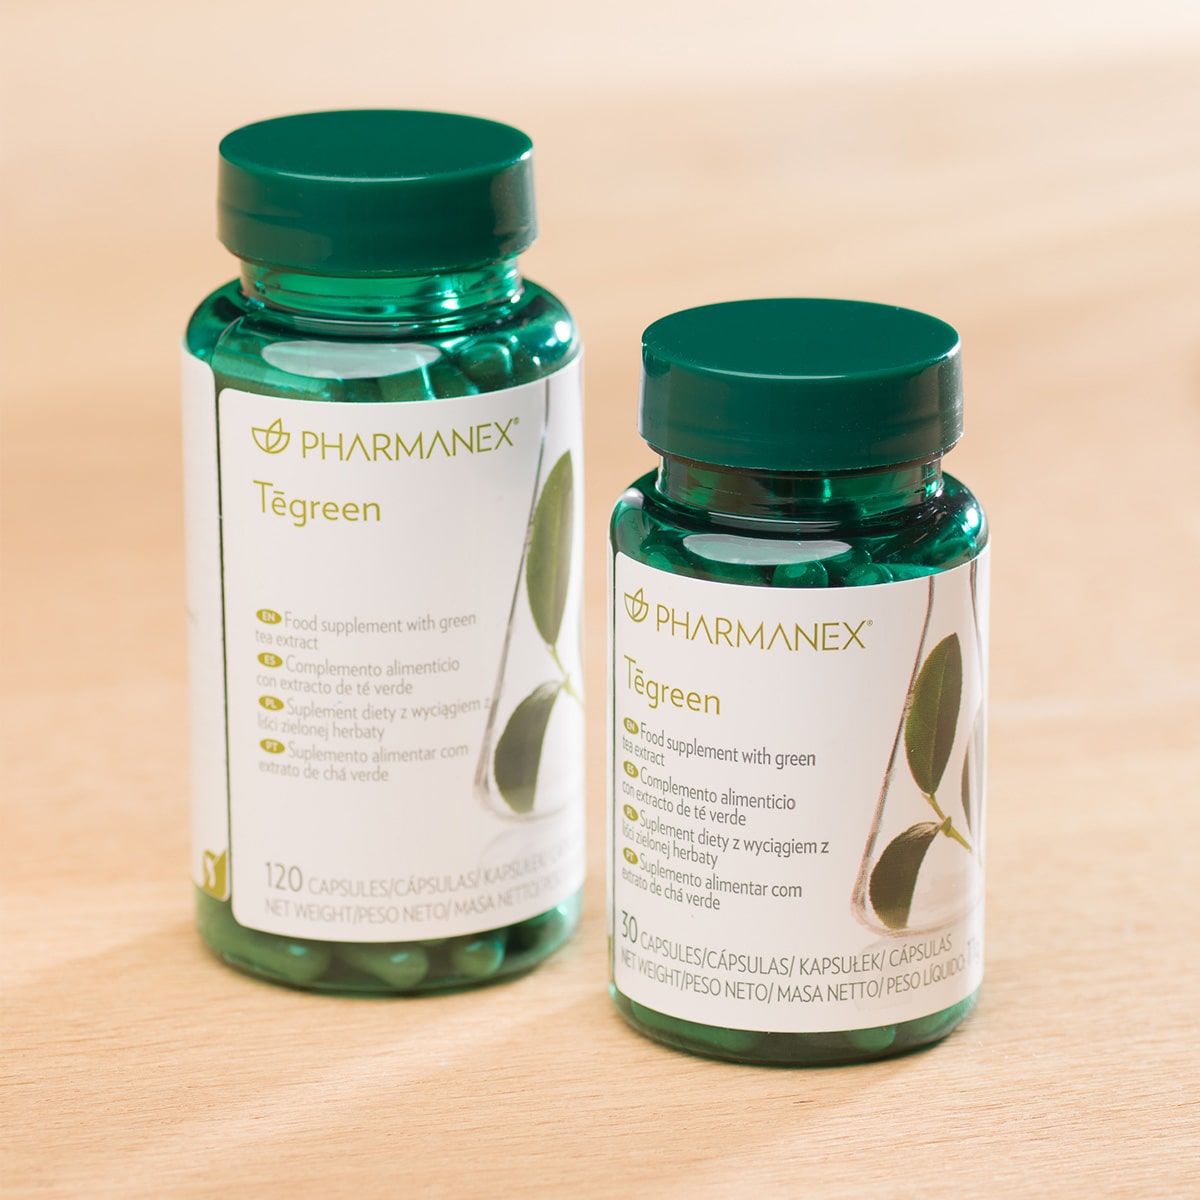 Zwei Pharmanex Tegreen Kapselgläser (30 Kapseln, und 120 Kapseln) stehen nebeneinander auf einem Tisch.